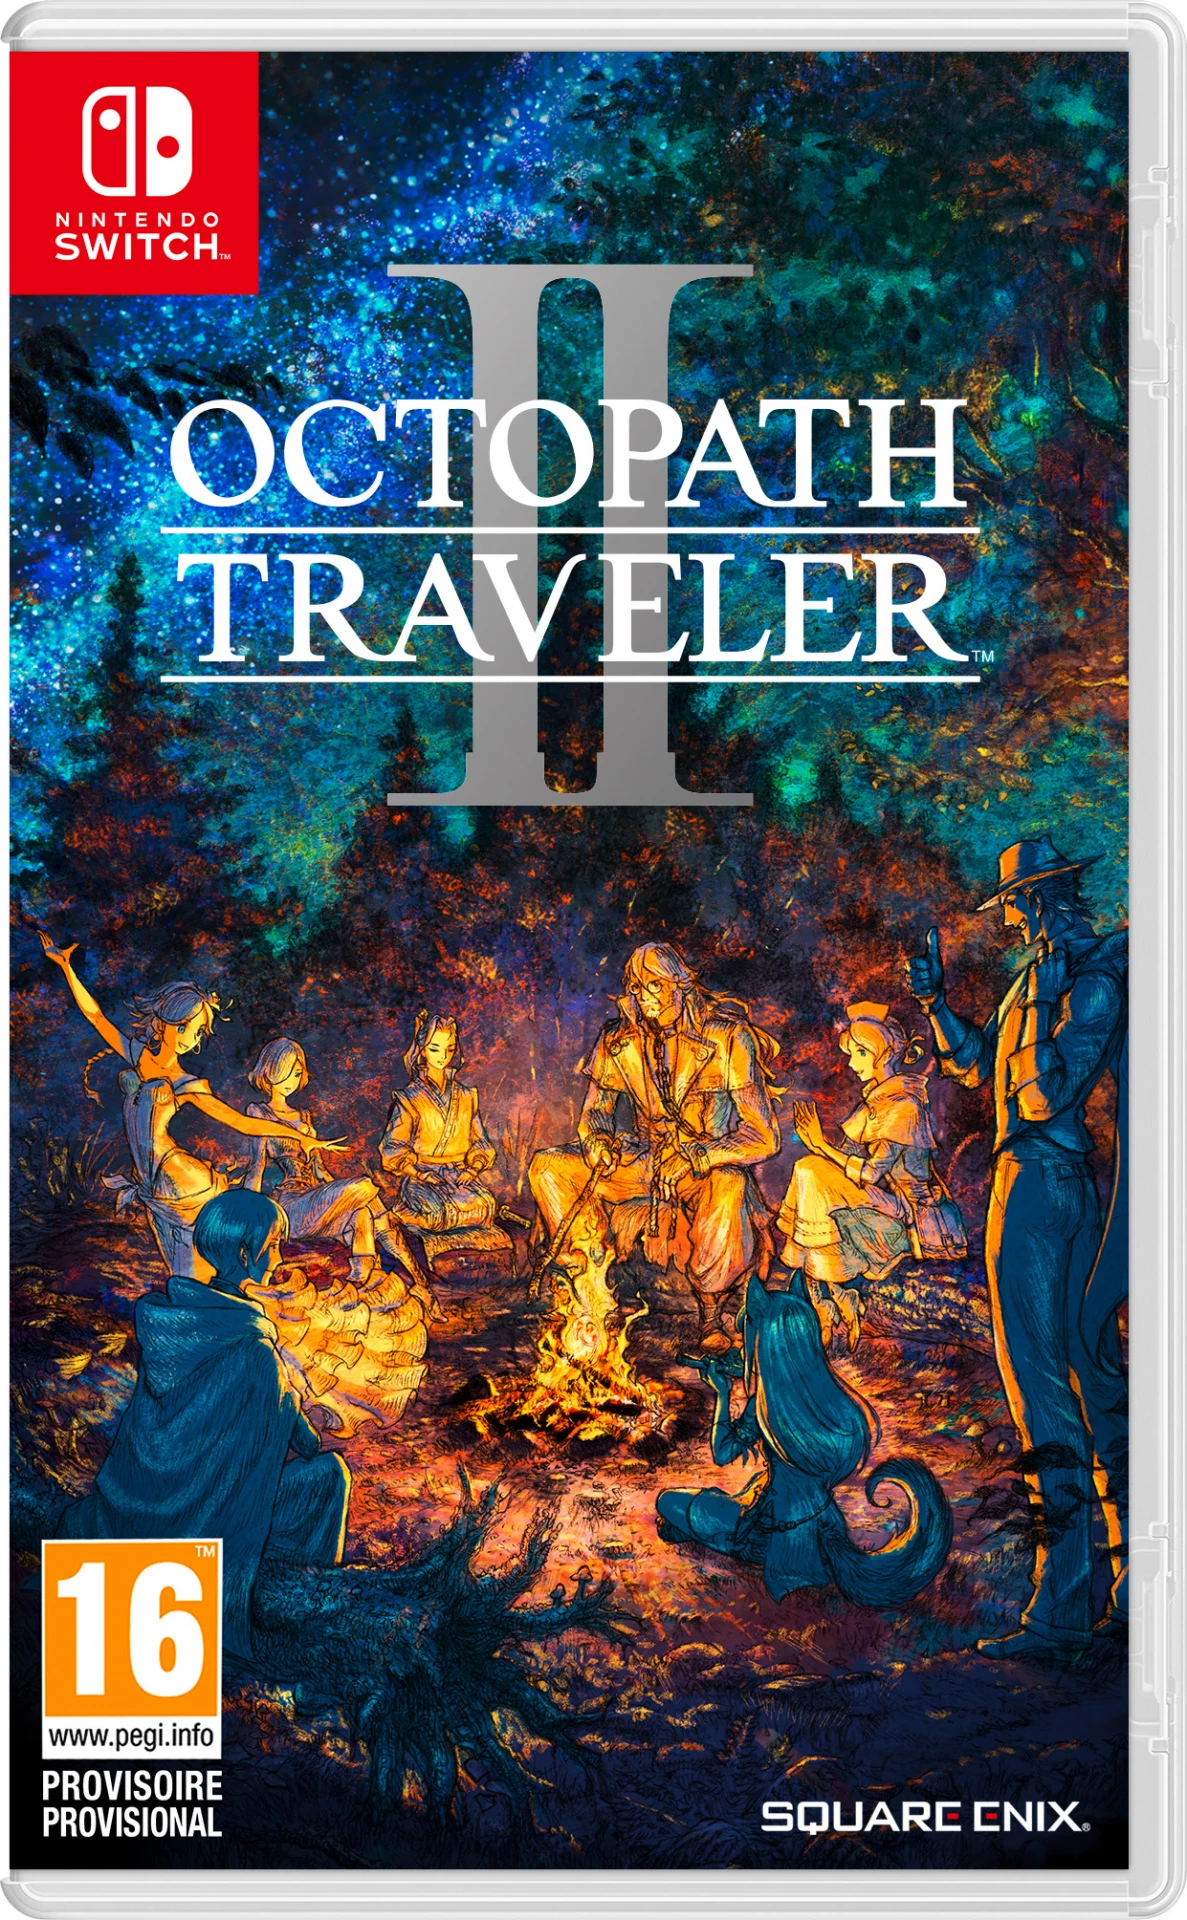 Octopath Traveler II voor de Nintendo Switch preorder plaatsen op nedgame.nl